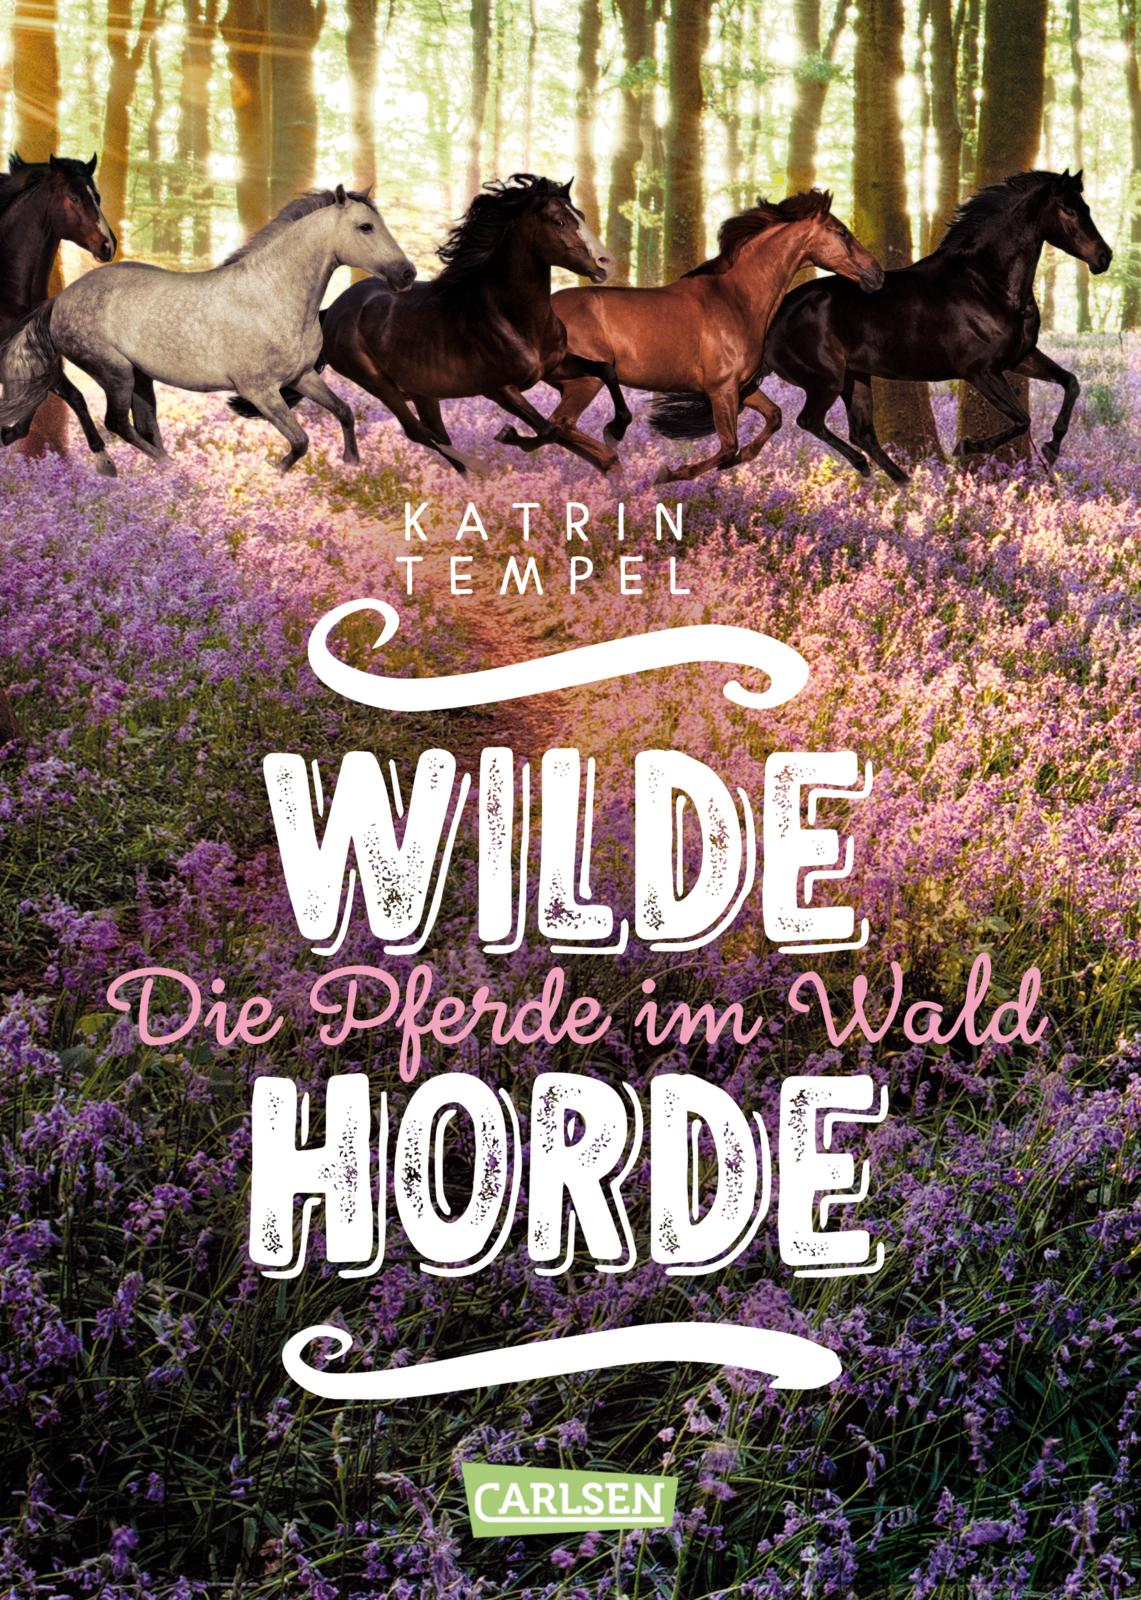 Katrin TempelWilde Horde – Die Pferde im Wald (Band 1)